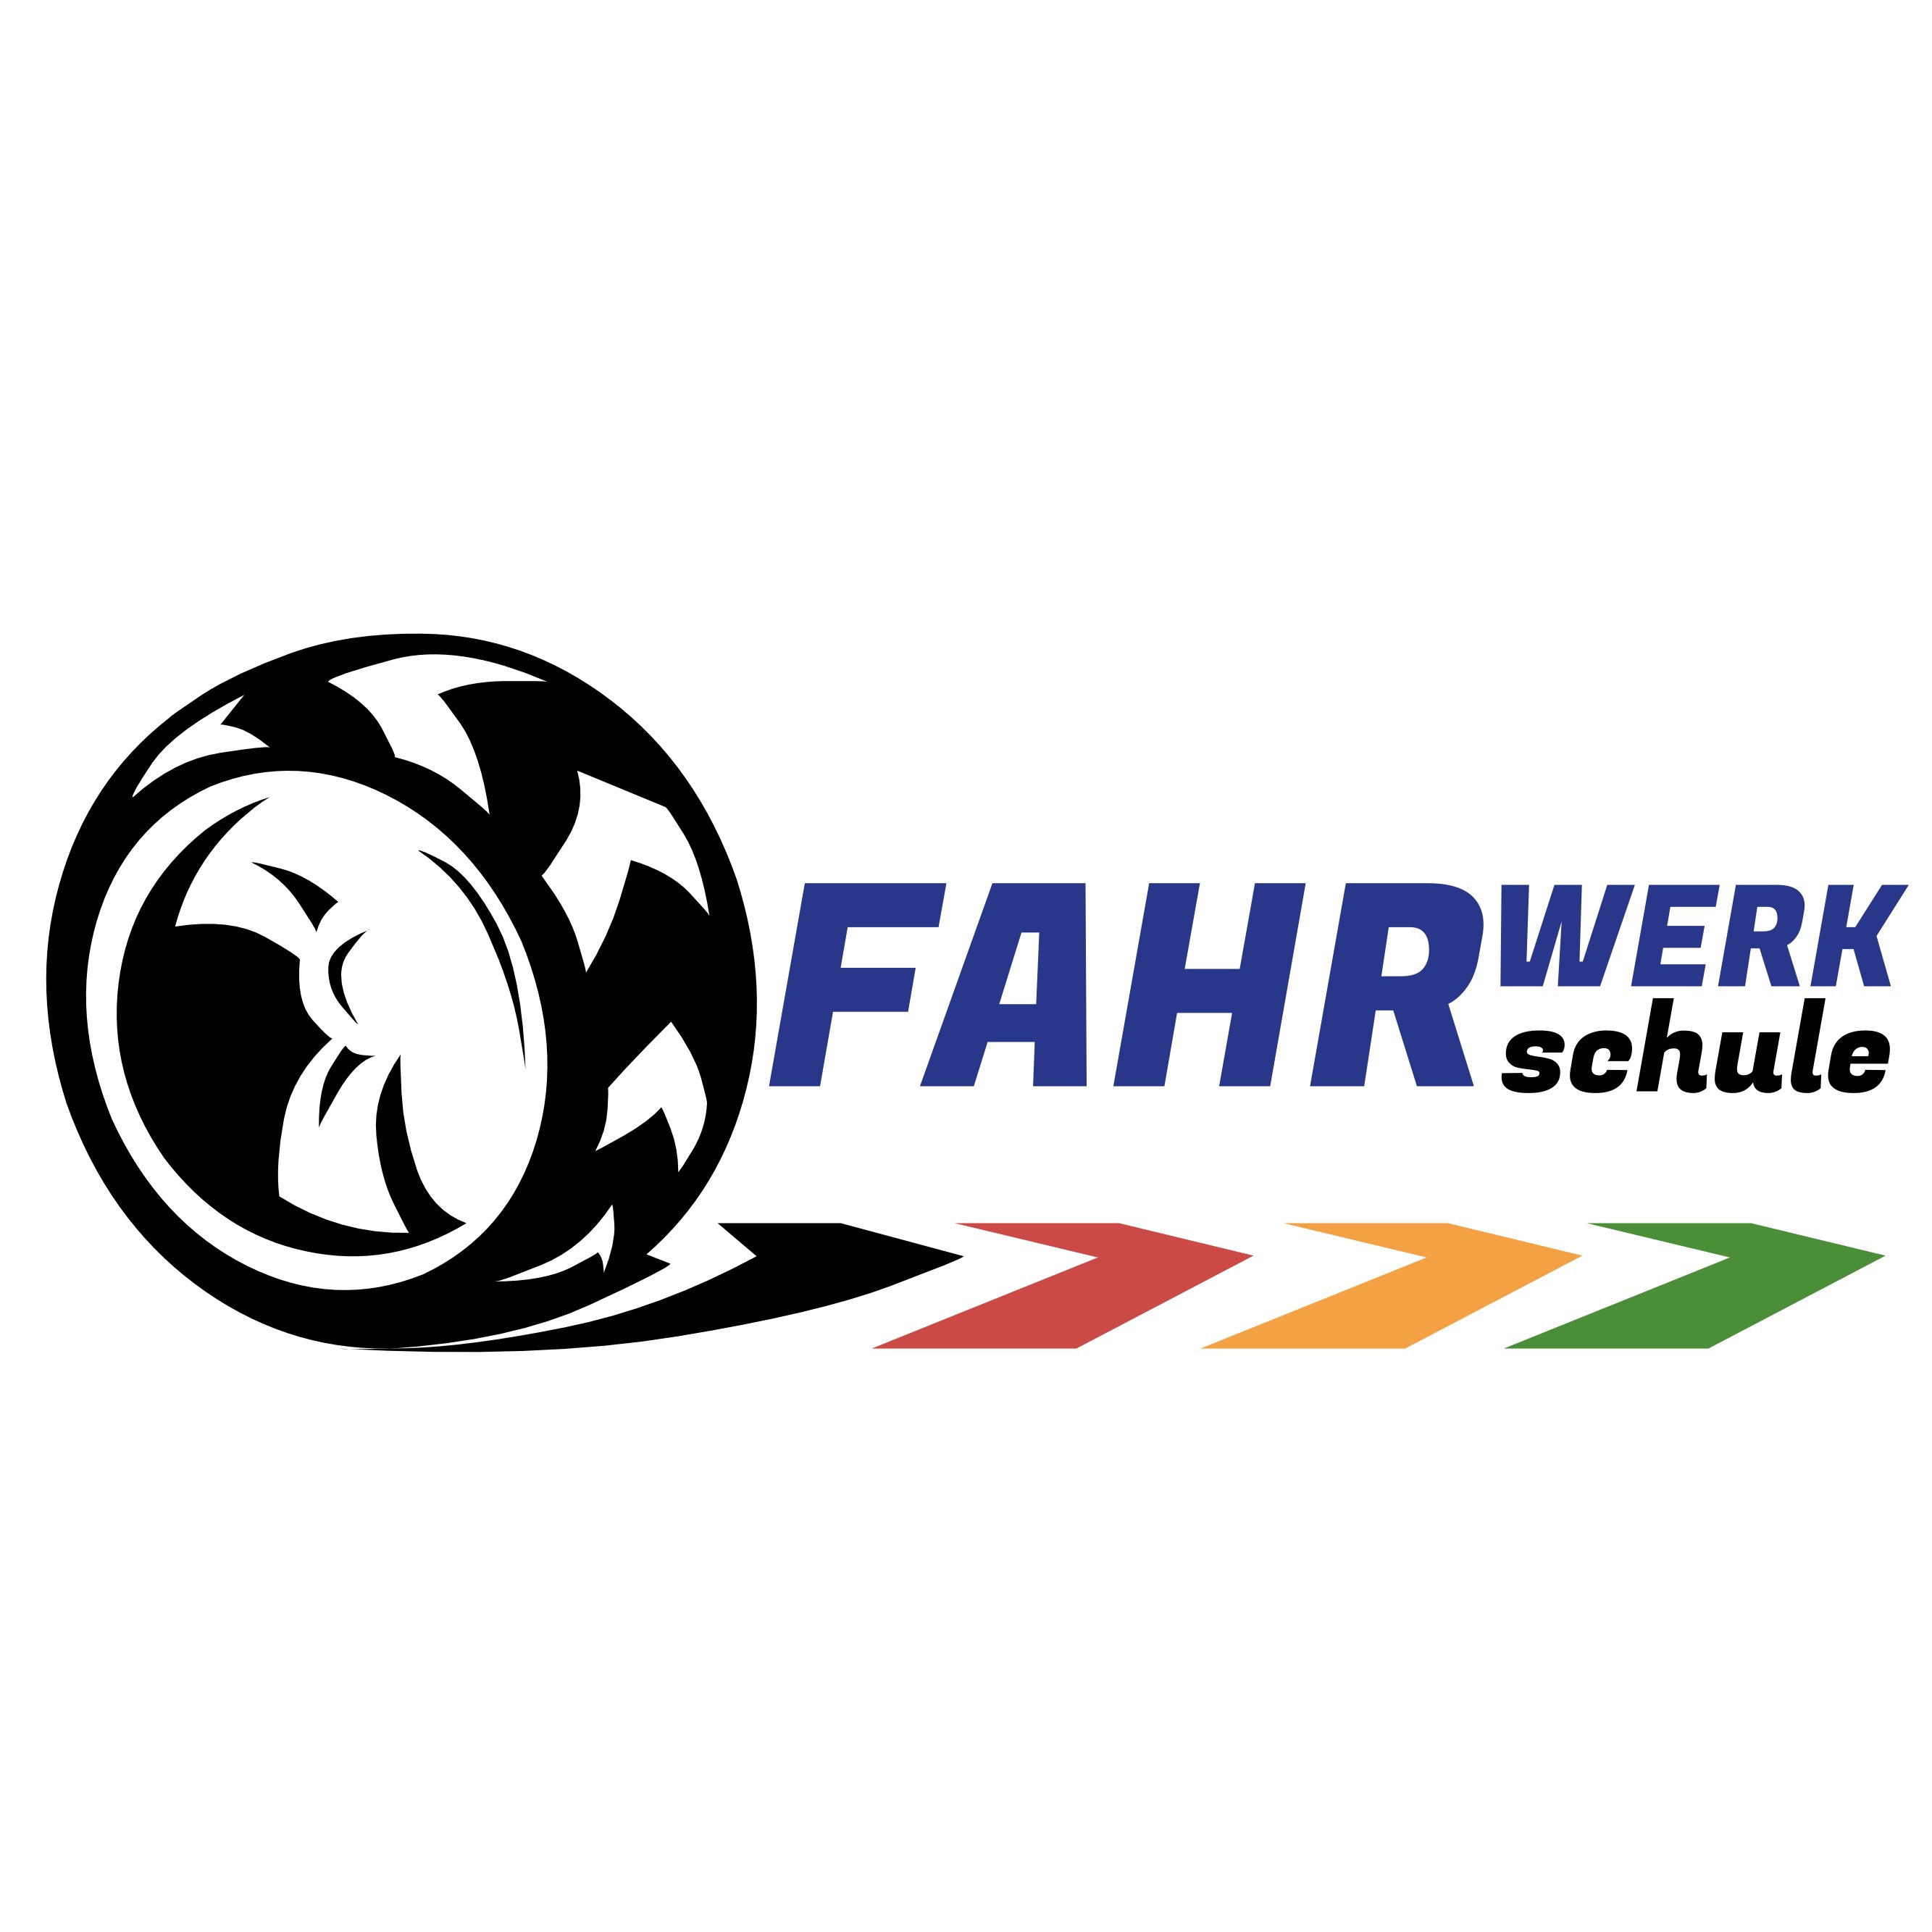 Fahrschule Fahrwerk GmbH  